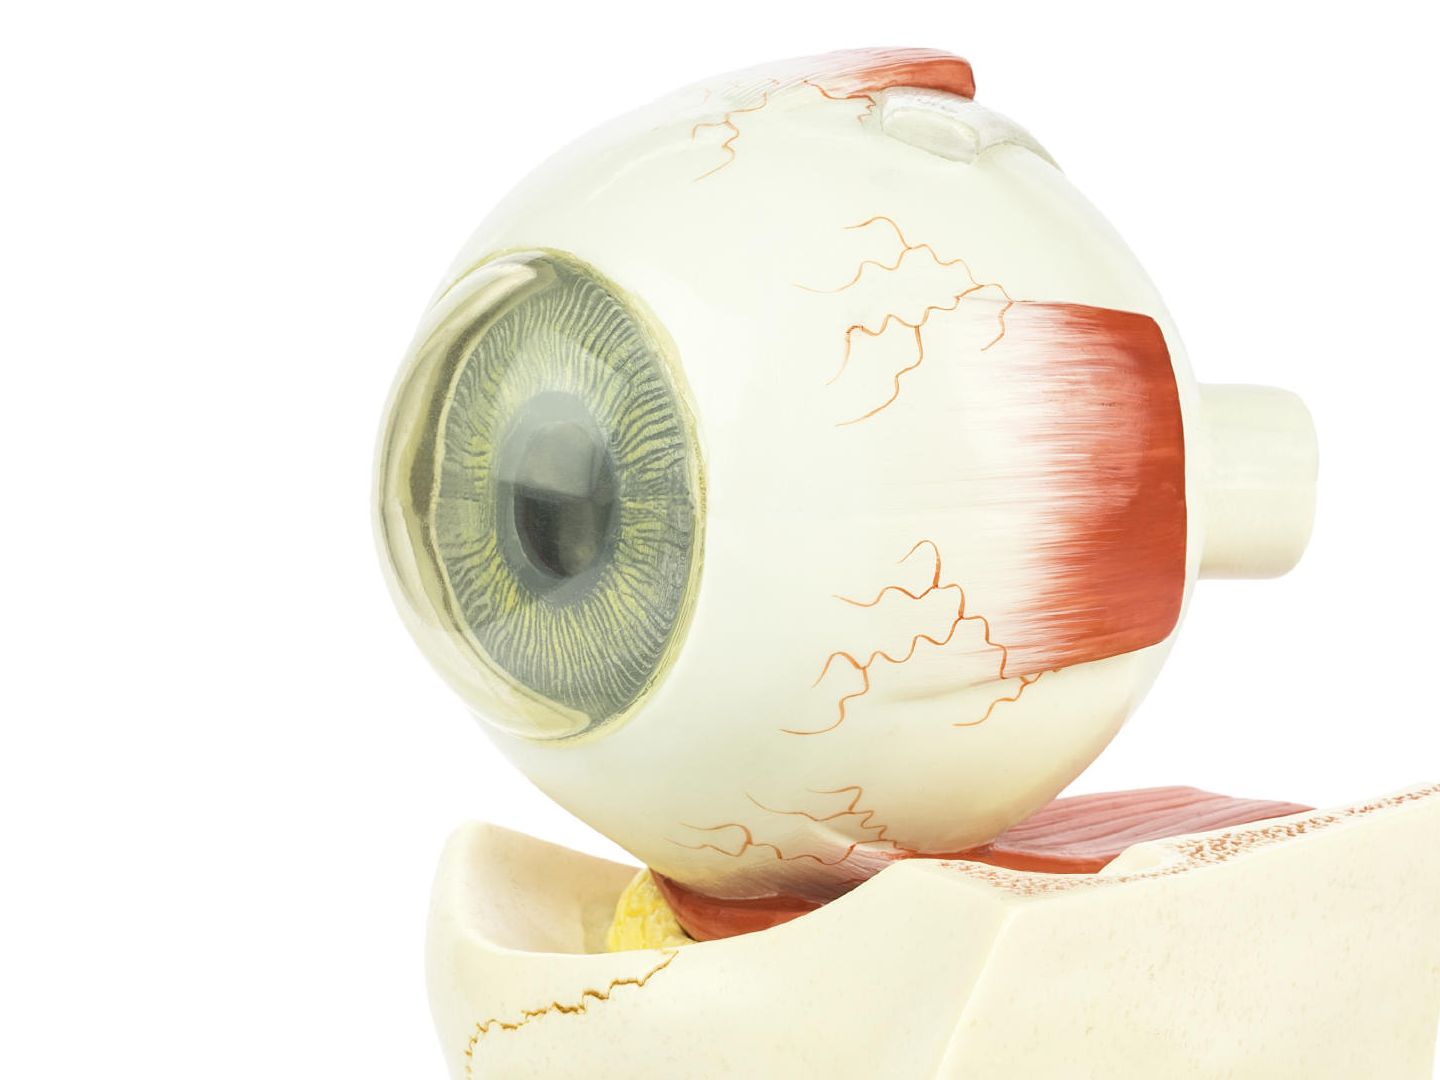 La degeneración macular impide la visión central del ojo